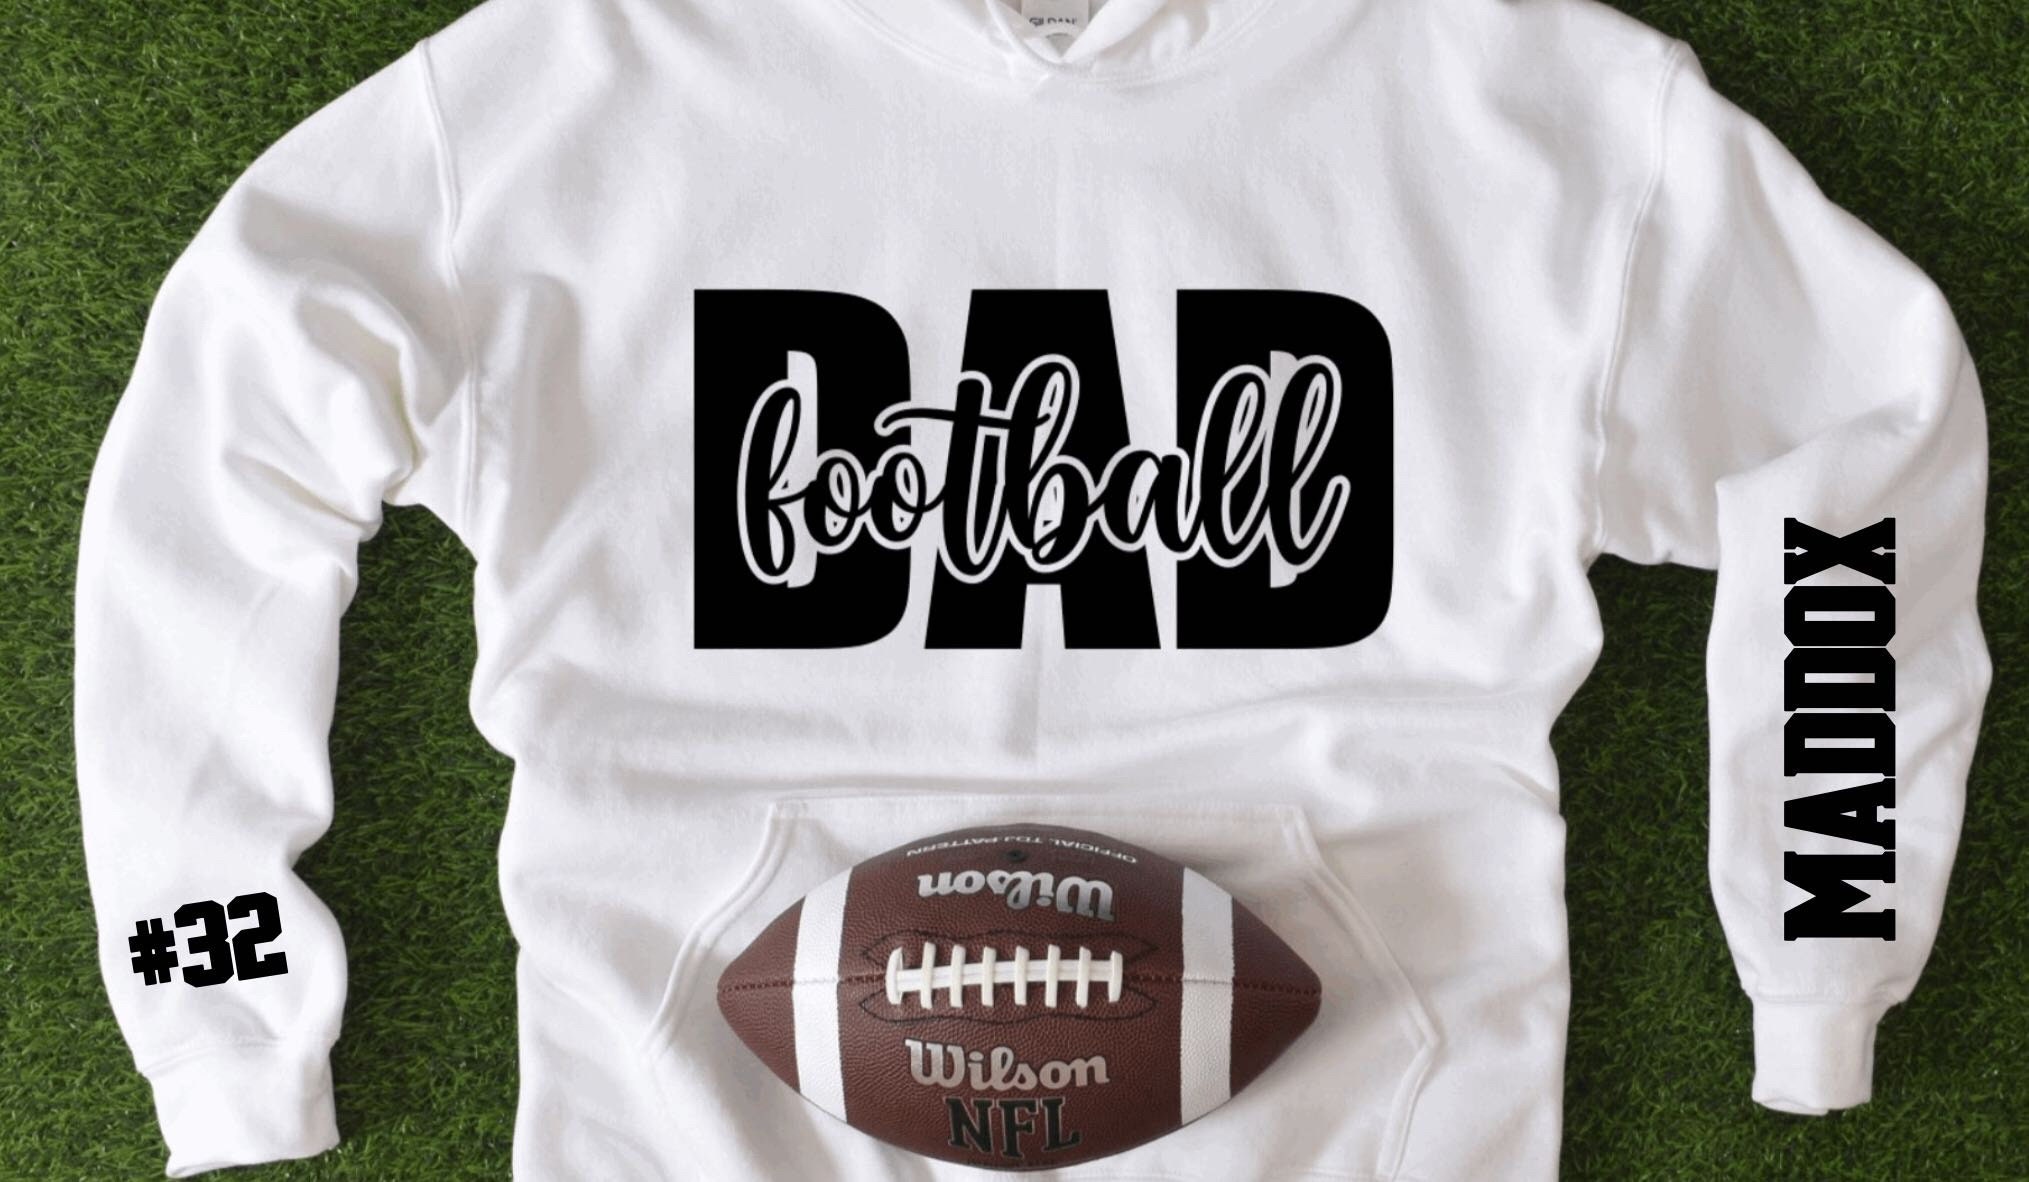 HeSaidSheSaidCompany Football Sweatshirt, Football Shirts for Men, Custom Football Sweatshirts, Football Dad Shirt, Personalized Football Sweater, Team Jersey